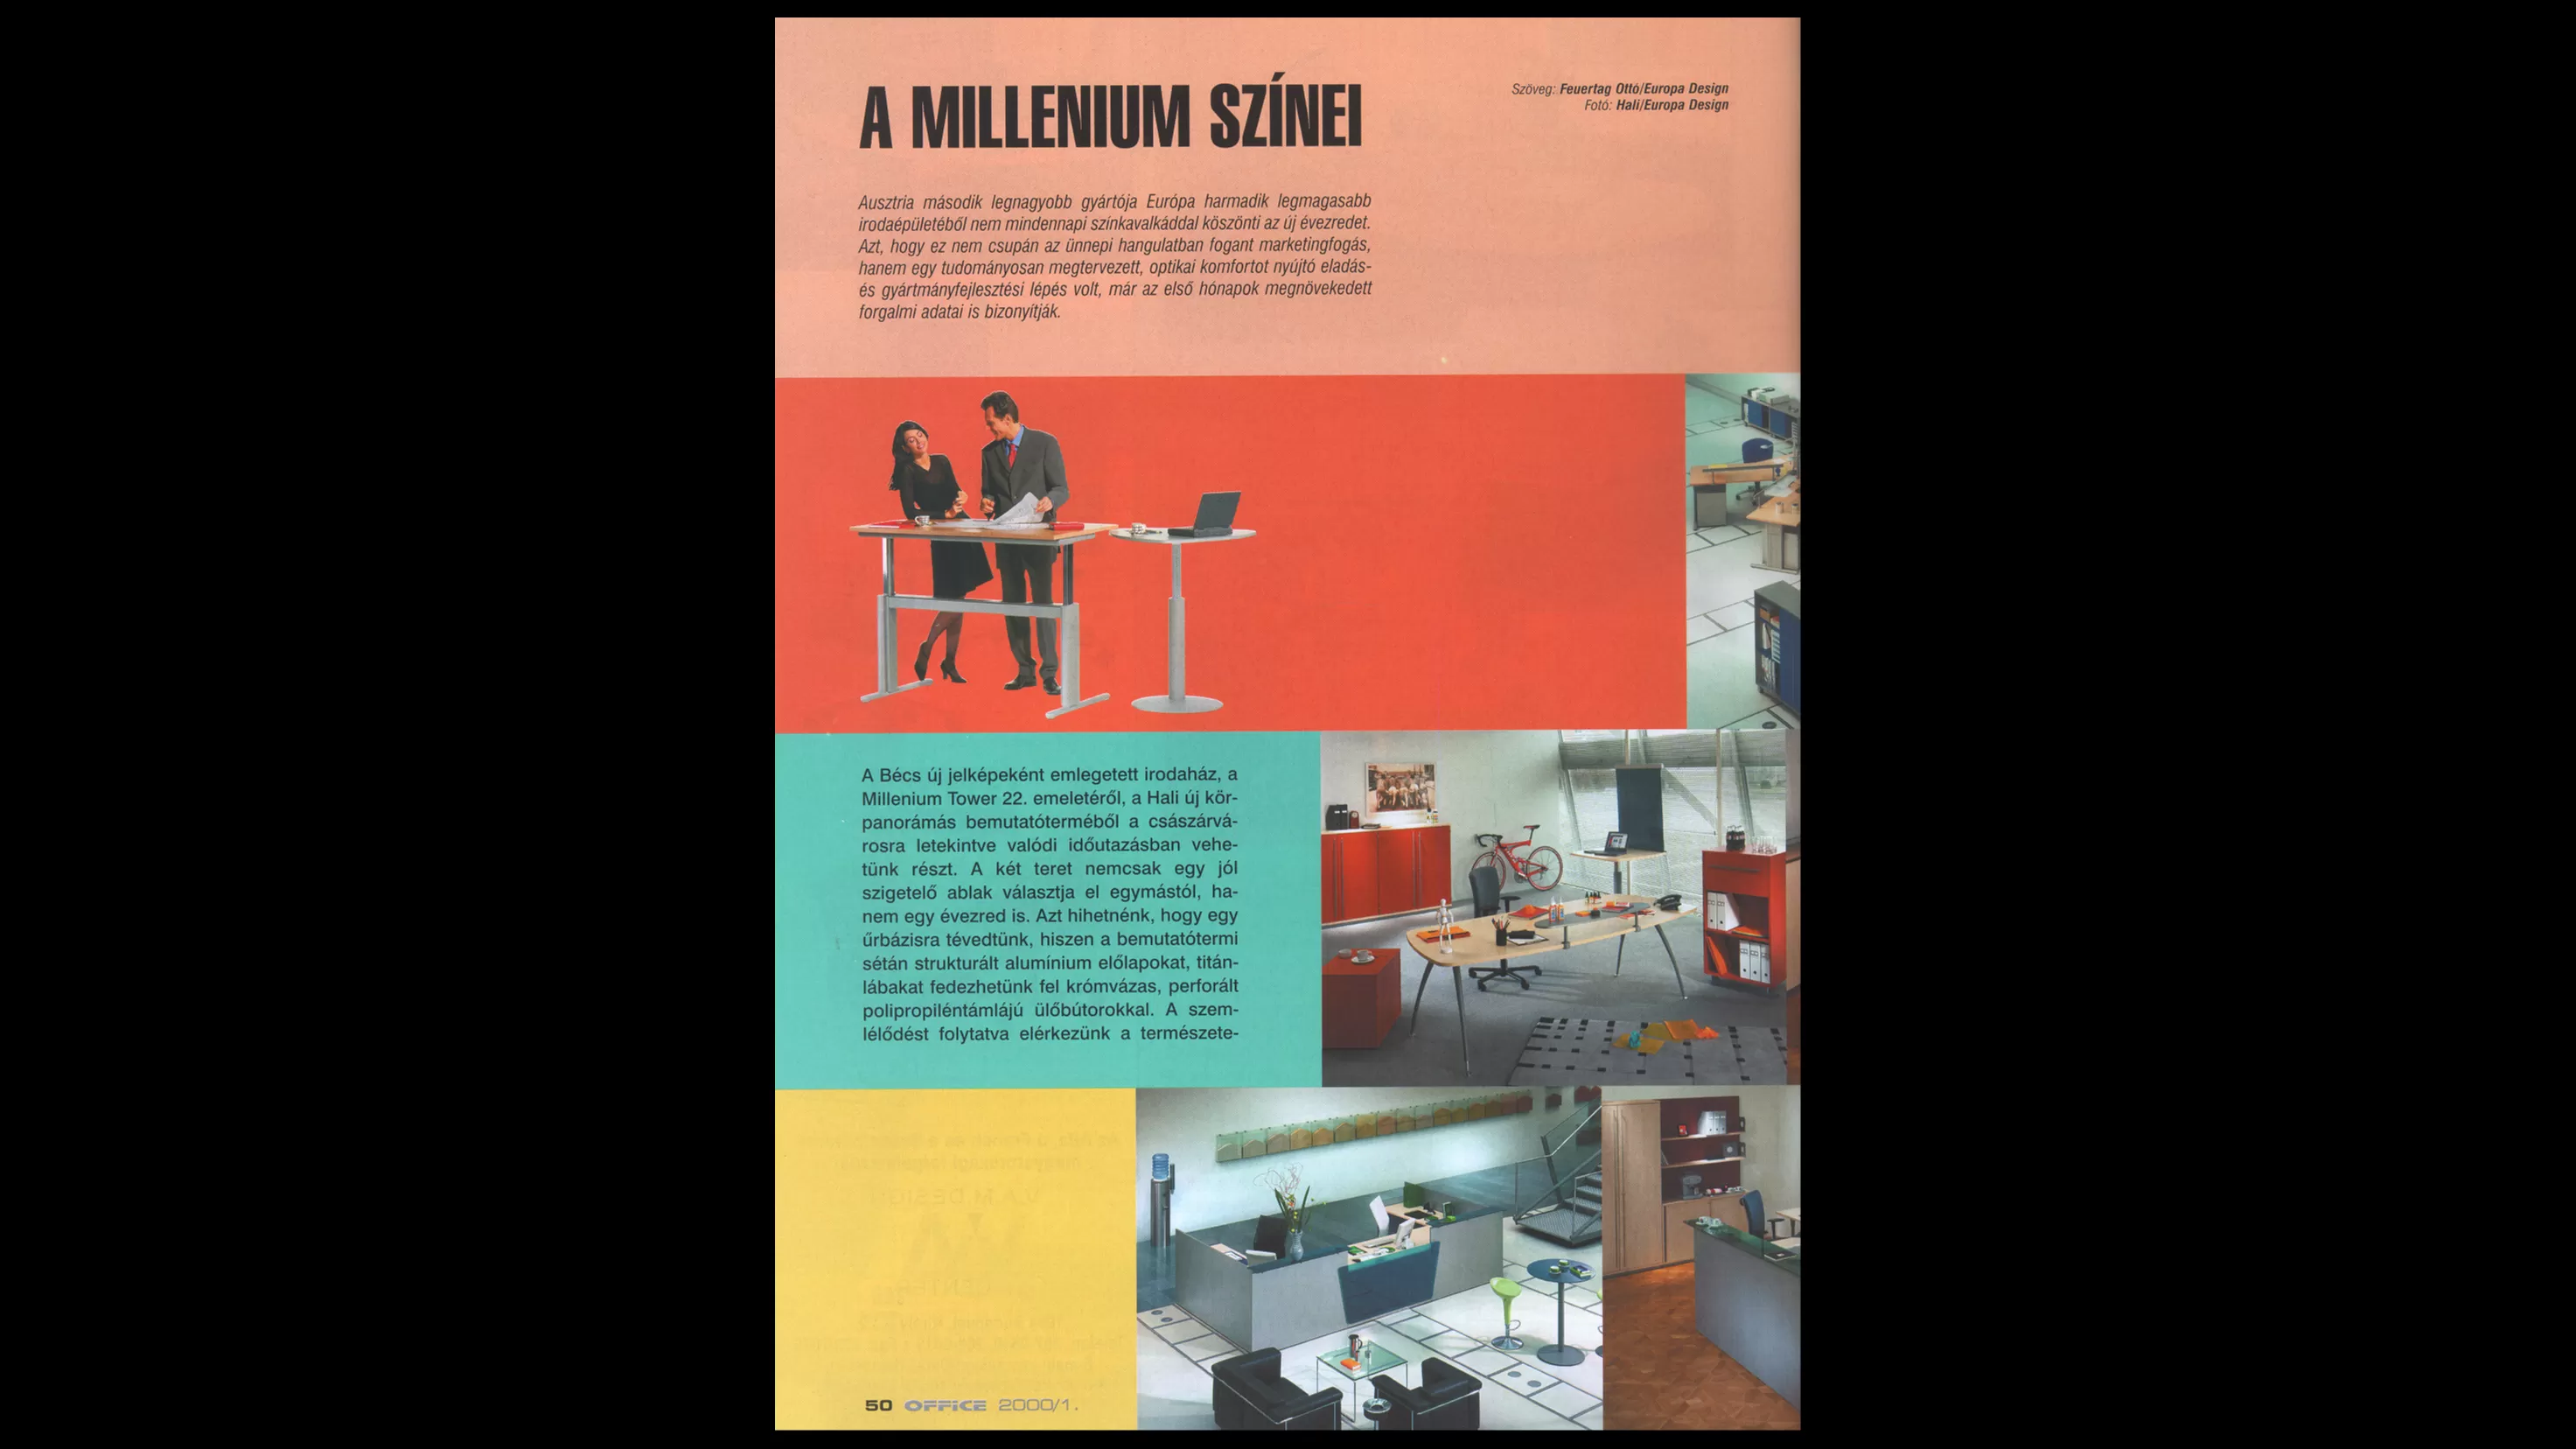 Office 2000 A Millenium színei 